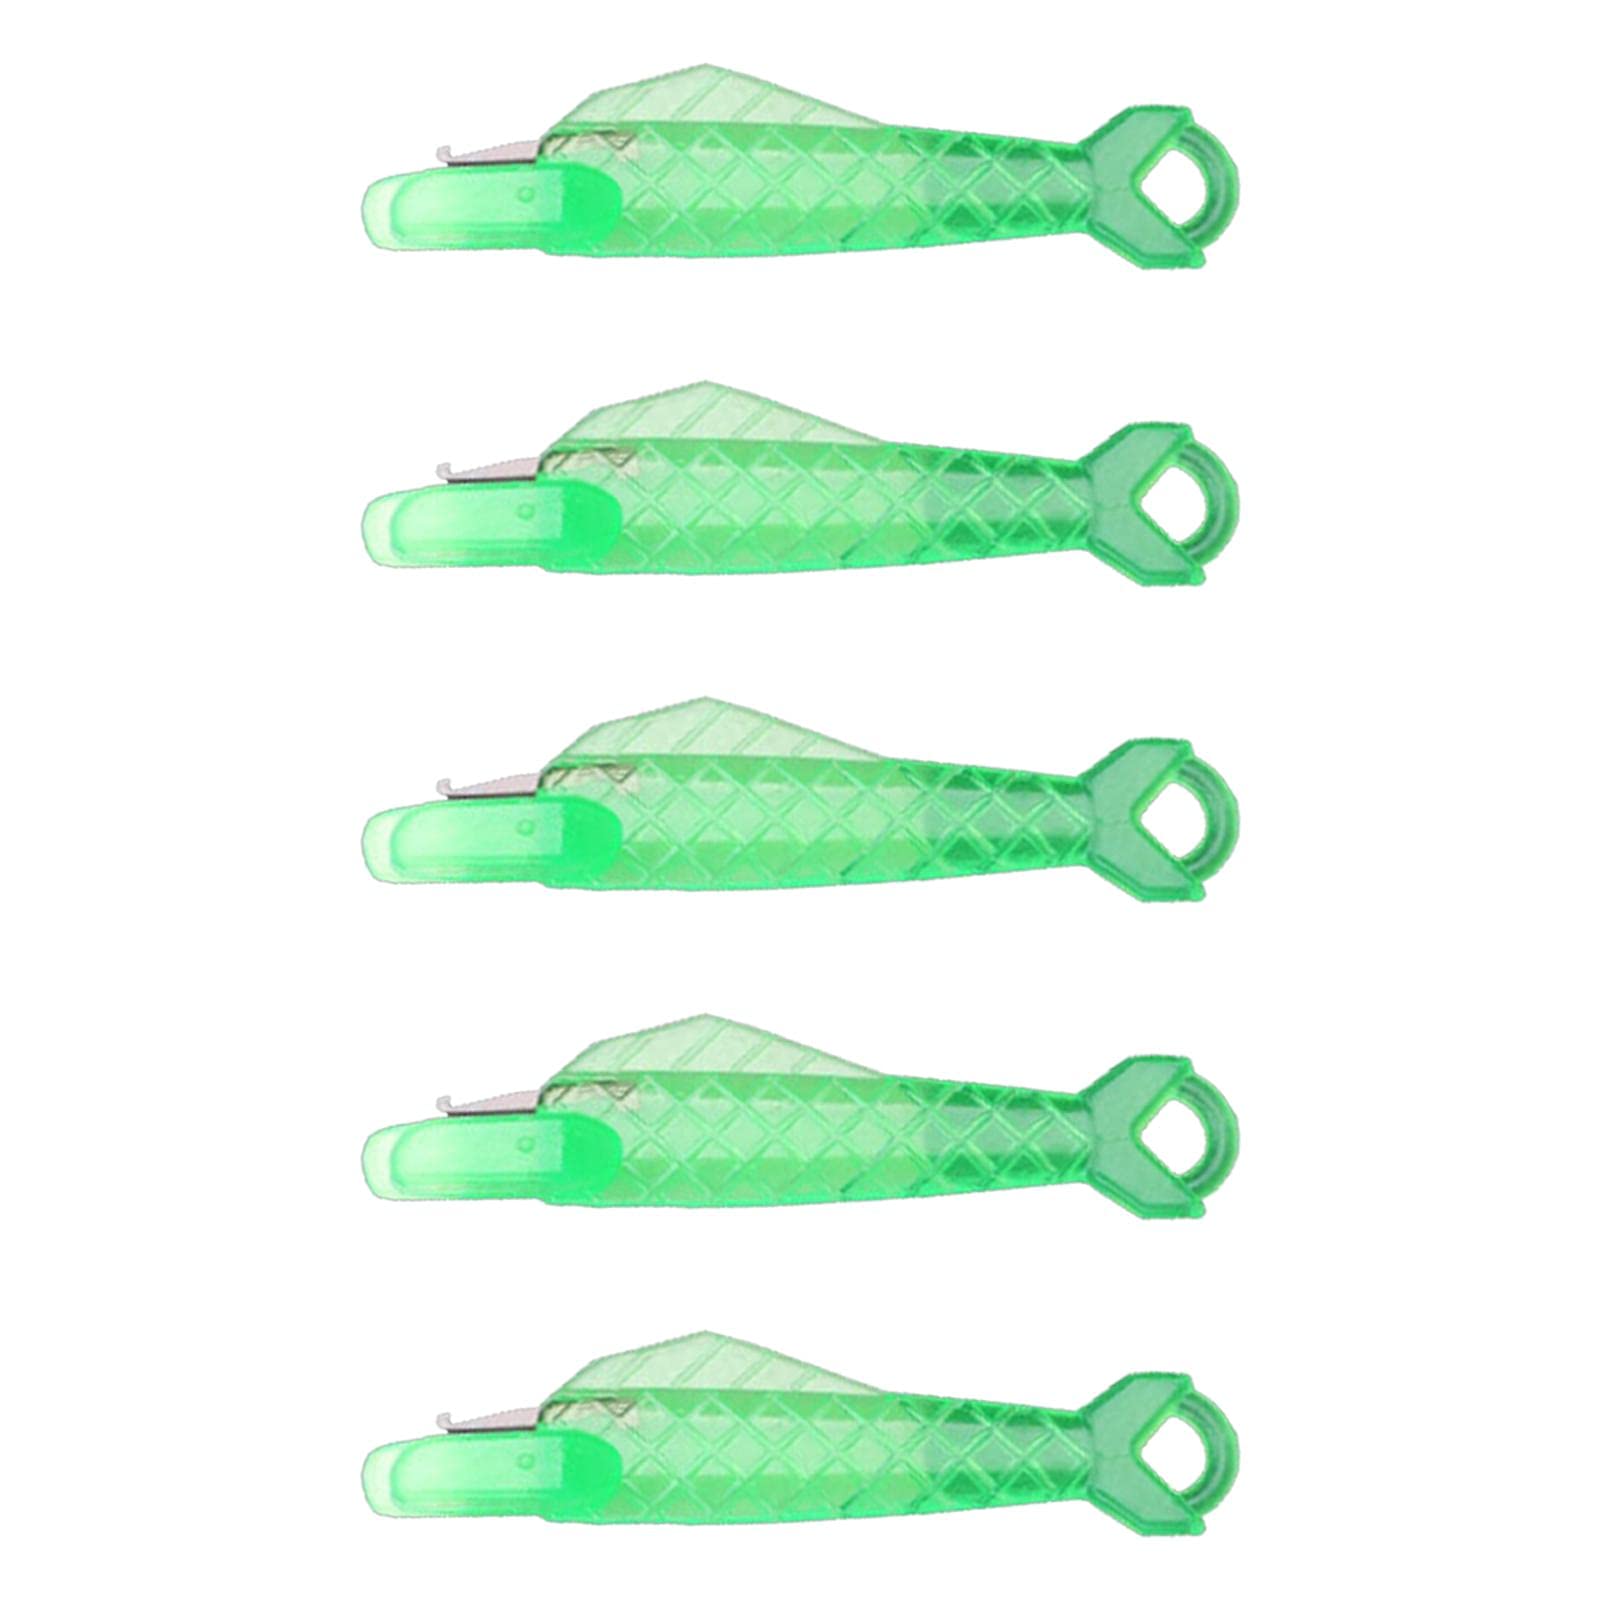 Niktule -Fisch-Nadeleinfädler Einfädelhilfe für Nadeln Nähmaschine Praktisches Werkzeug zum Faden Handnähen Nadeleinfädler Kunststoff-Nadeleinfädler zum Handnähen Stricken Stickerei von Niktule